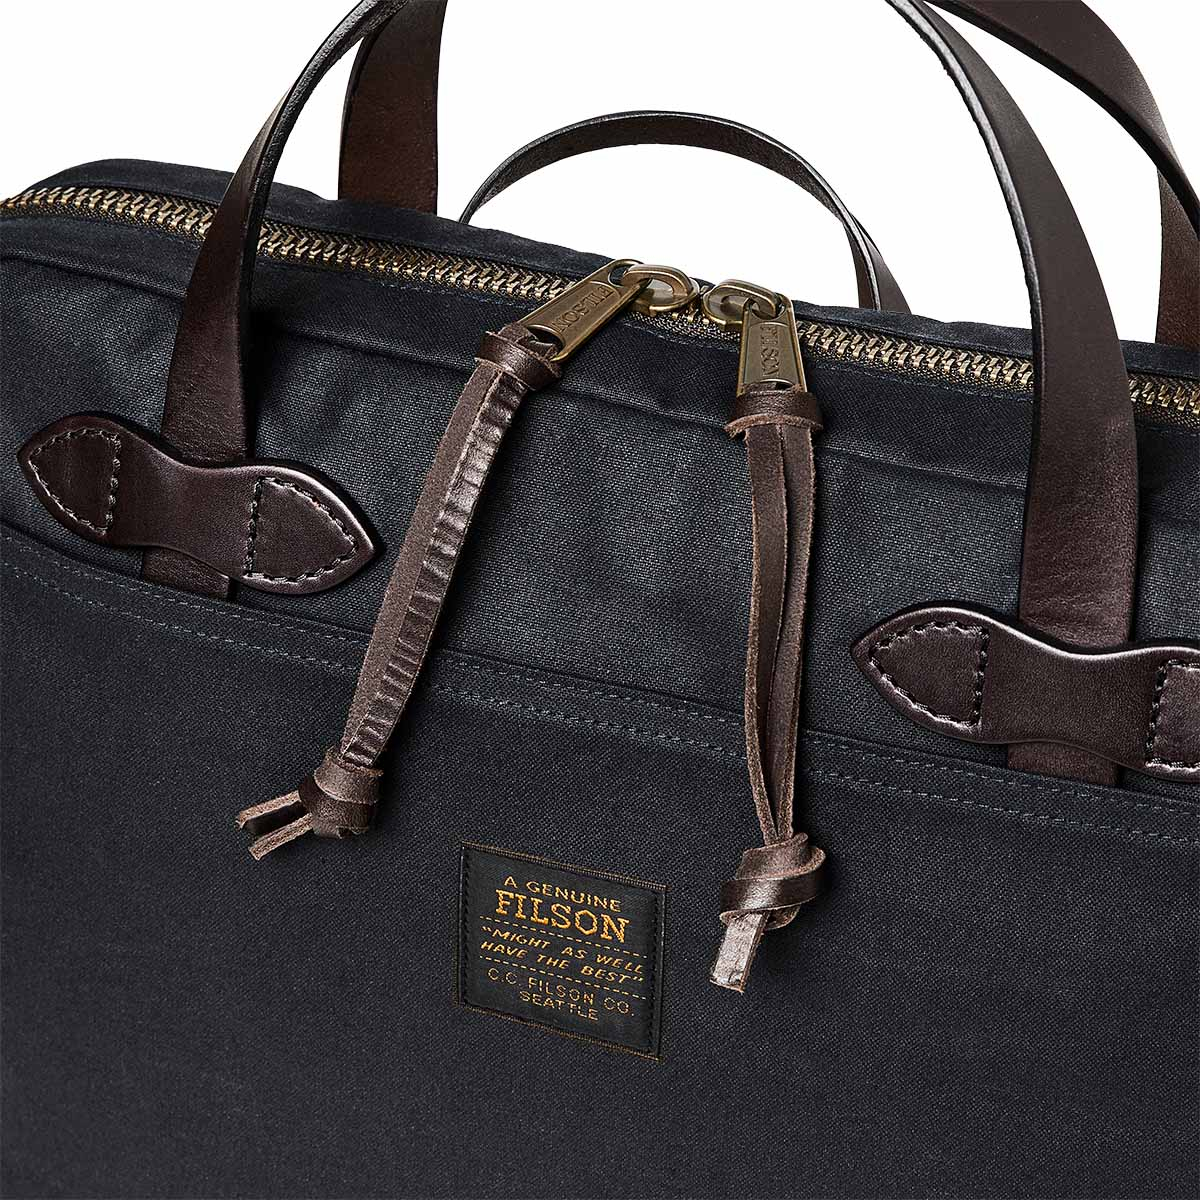 Filson Tin Cloth Compact Briefcase Navy, is uitermate geschikt voor je dagelijks trip naar kantoor